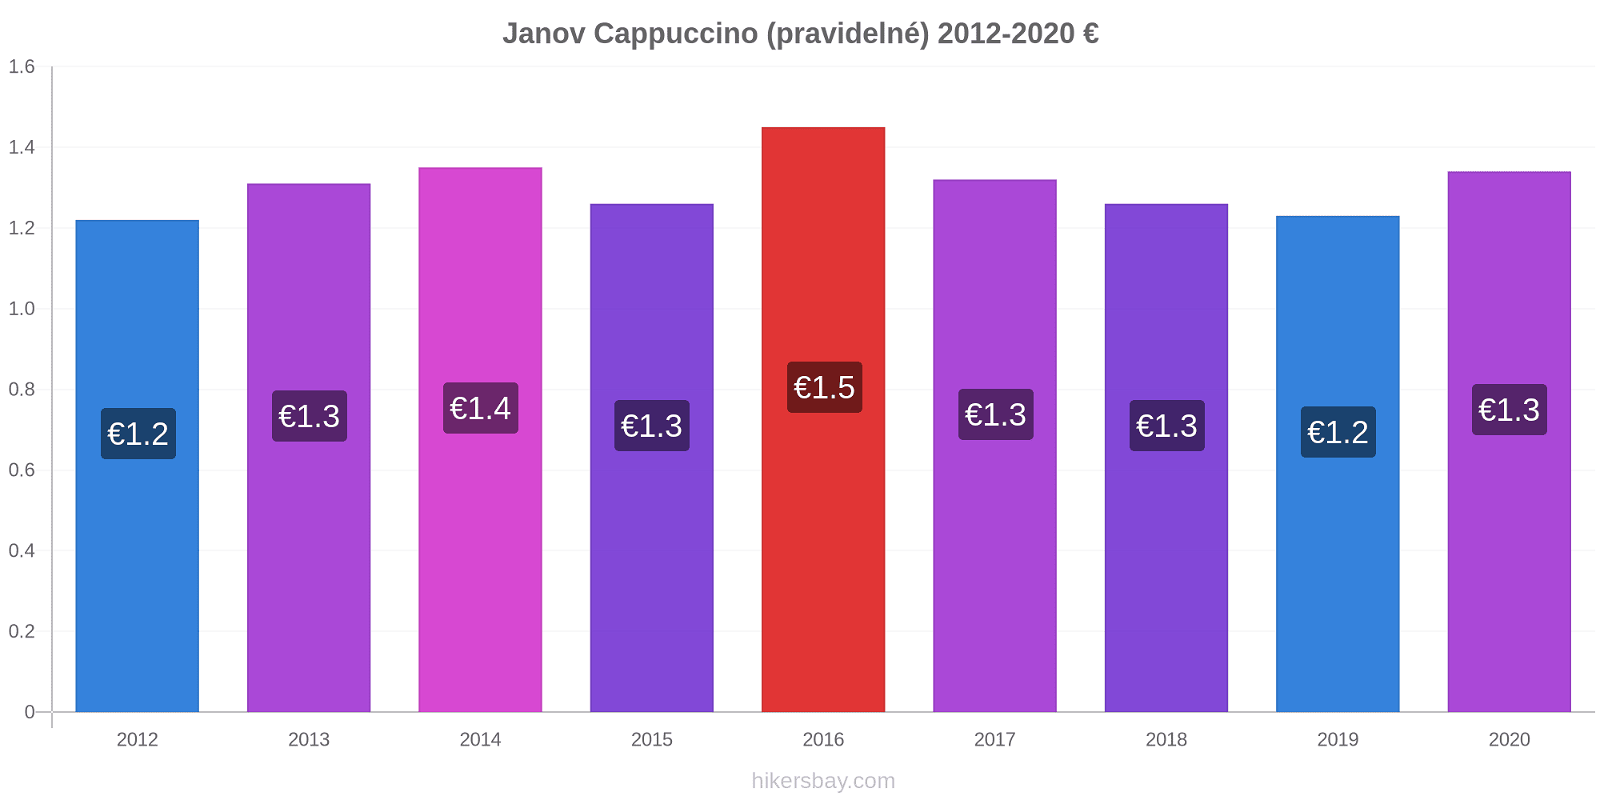 Janov změny cen Cappuccino (pravidelné) hikersbay.com